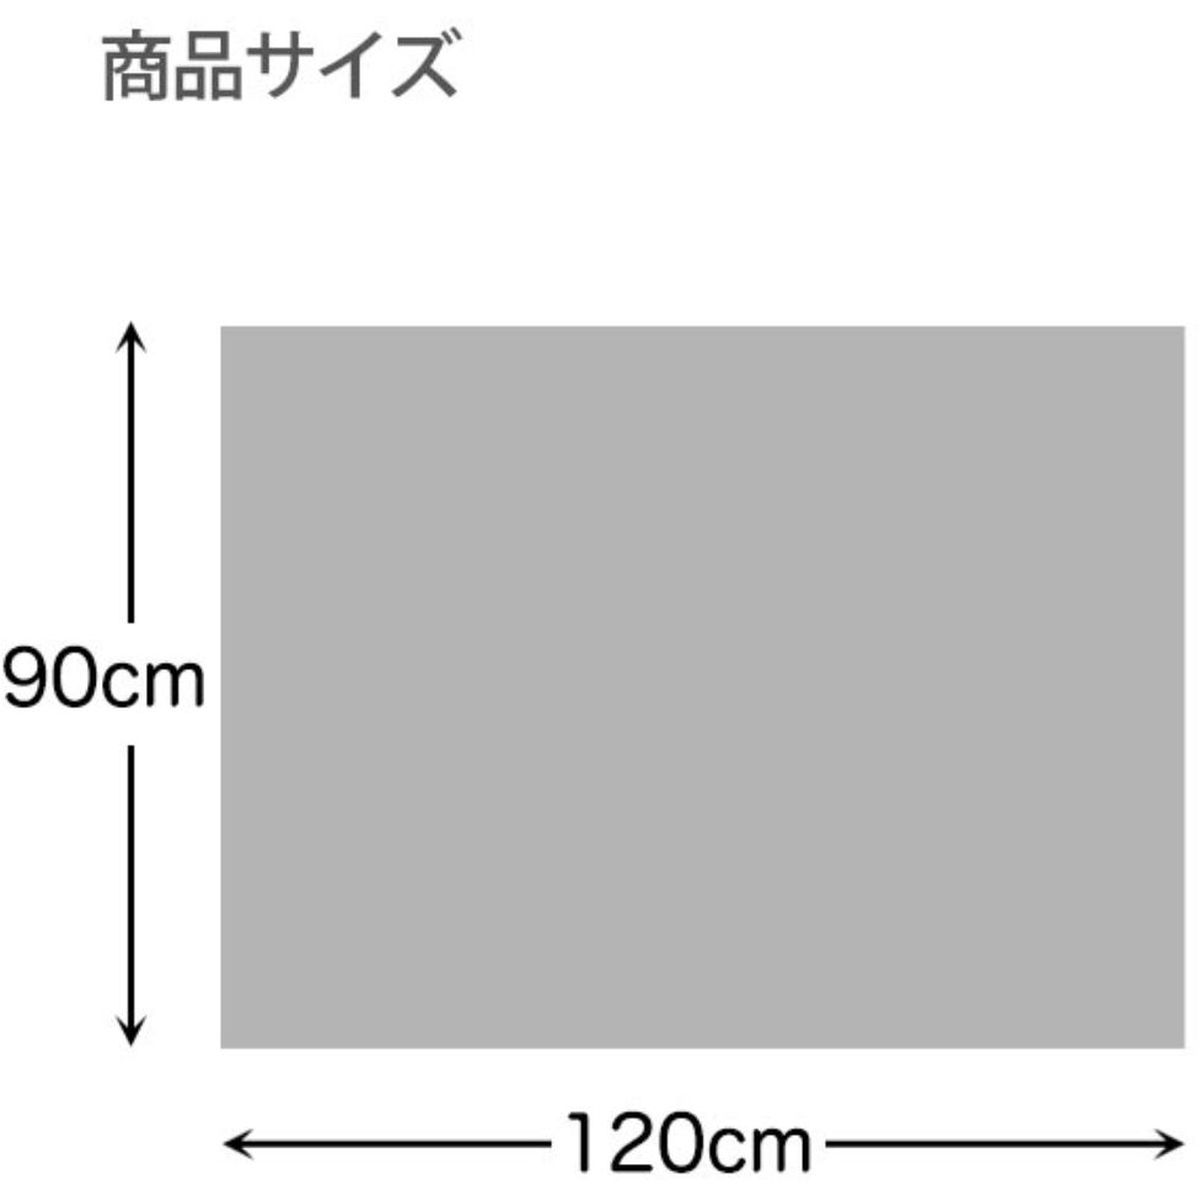 防滑・消臭・防水ペットマット ブルー 90cm×120cm ペット用 ギャベ柄 日本製